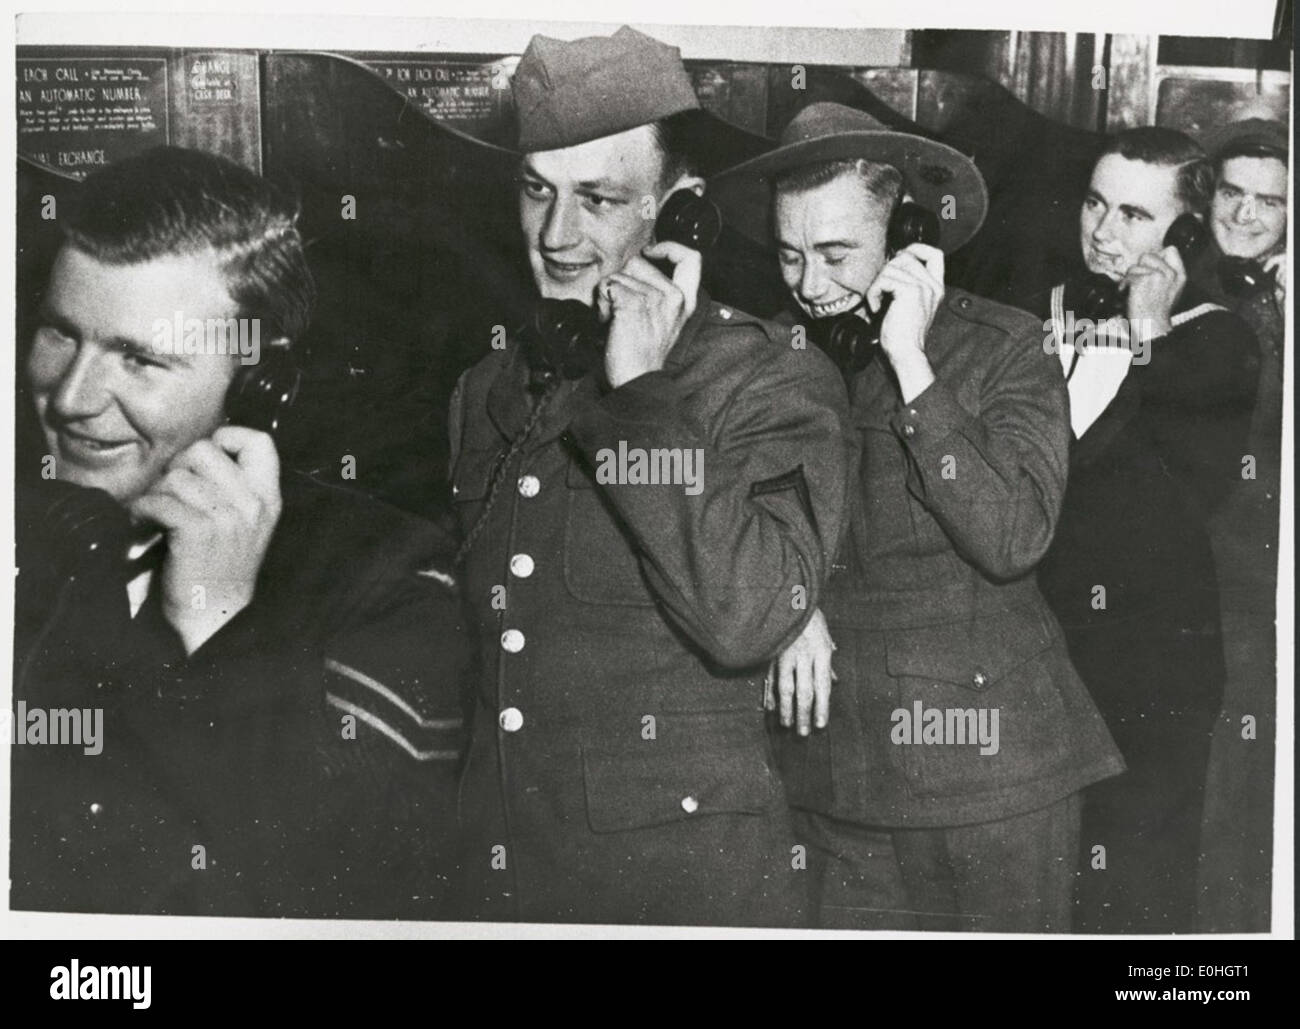 Militärangehörige der Royal Australian Air Force, der United States Army, der Australian Imperial Force und der Royal Australian Navy plaudern am Telefon mit ihren Freundinnen, Melbourne, 1942. Stockfoto